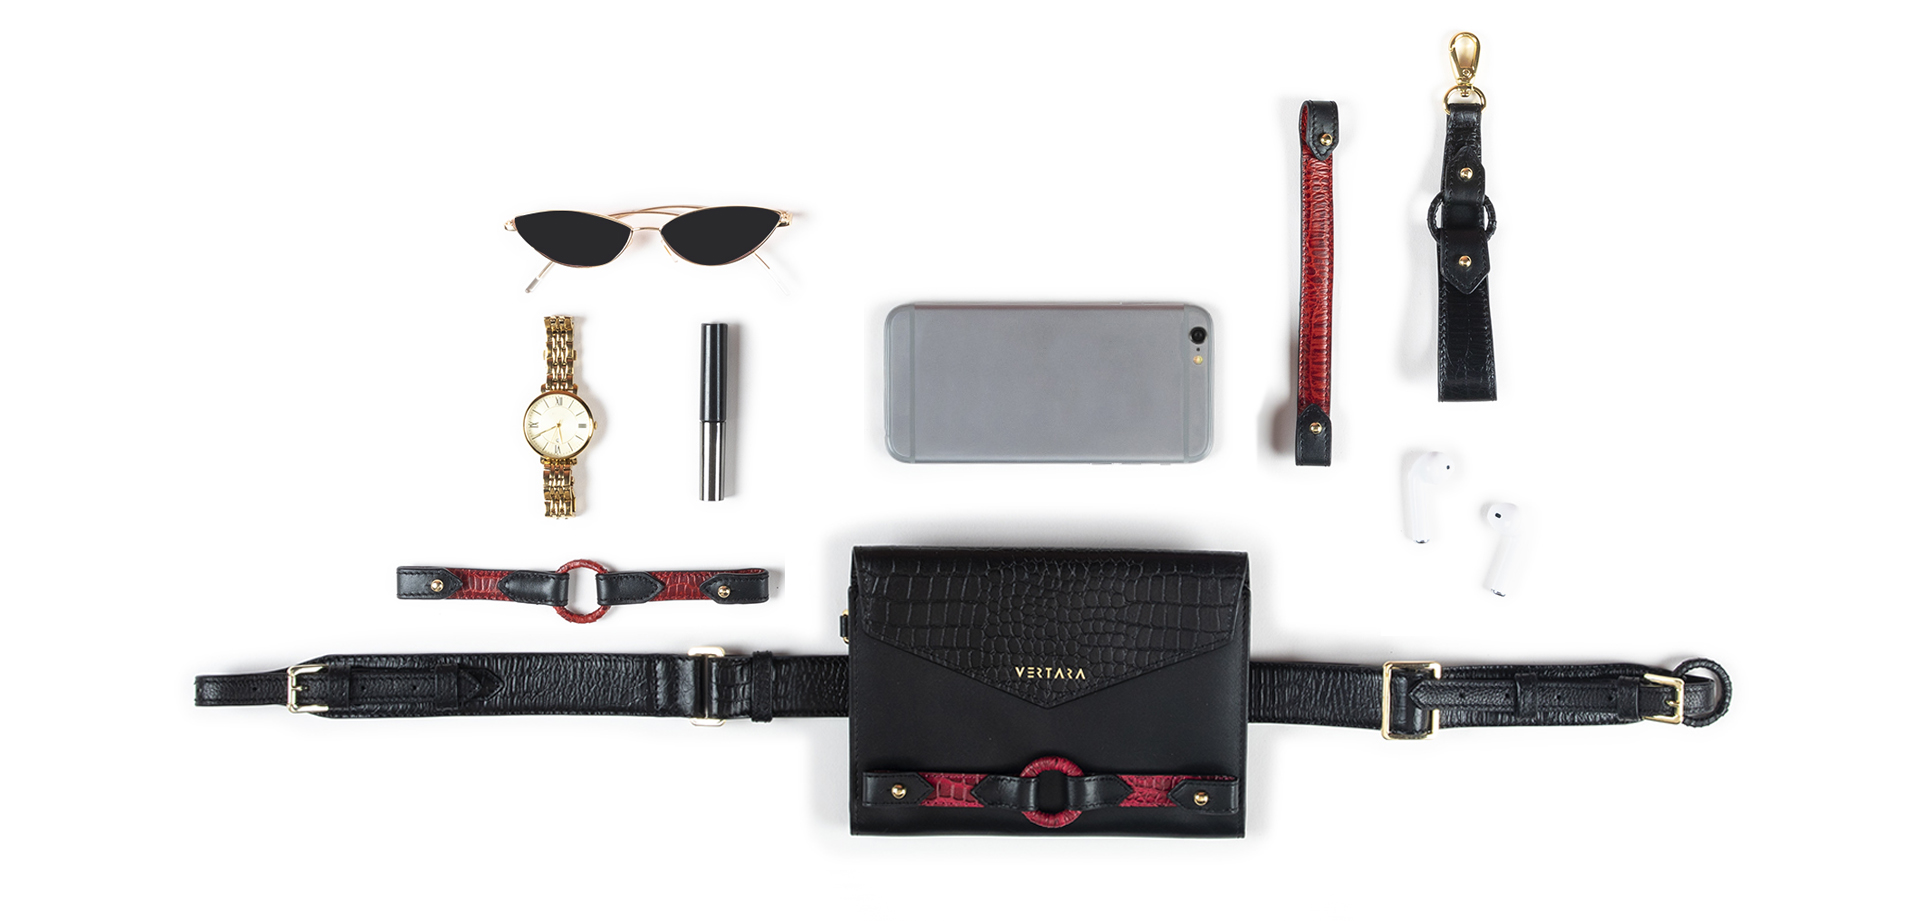 Ember Belt Bag-clutch-wallet-wristlet with Ember Bracelets in Black Leather fits cards, cash & phone.